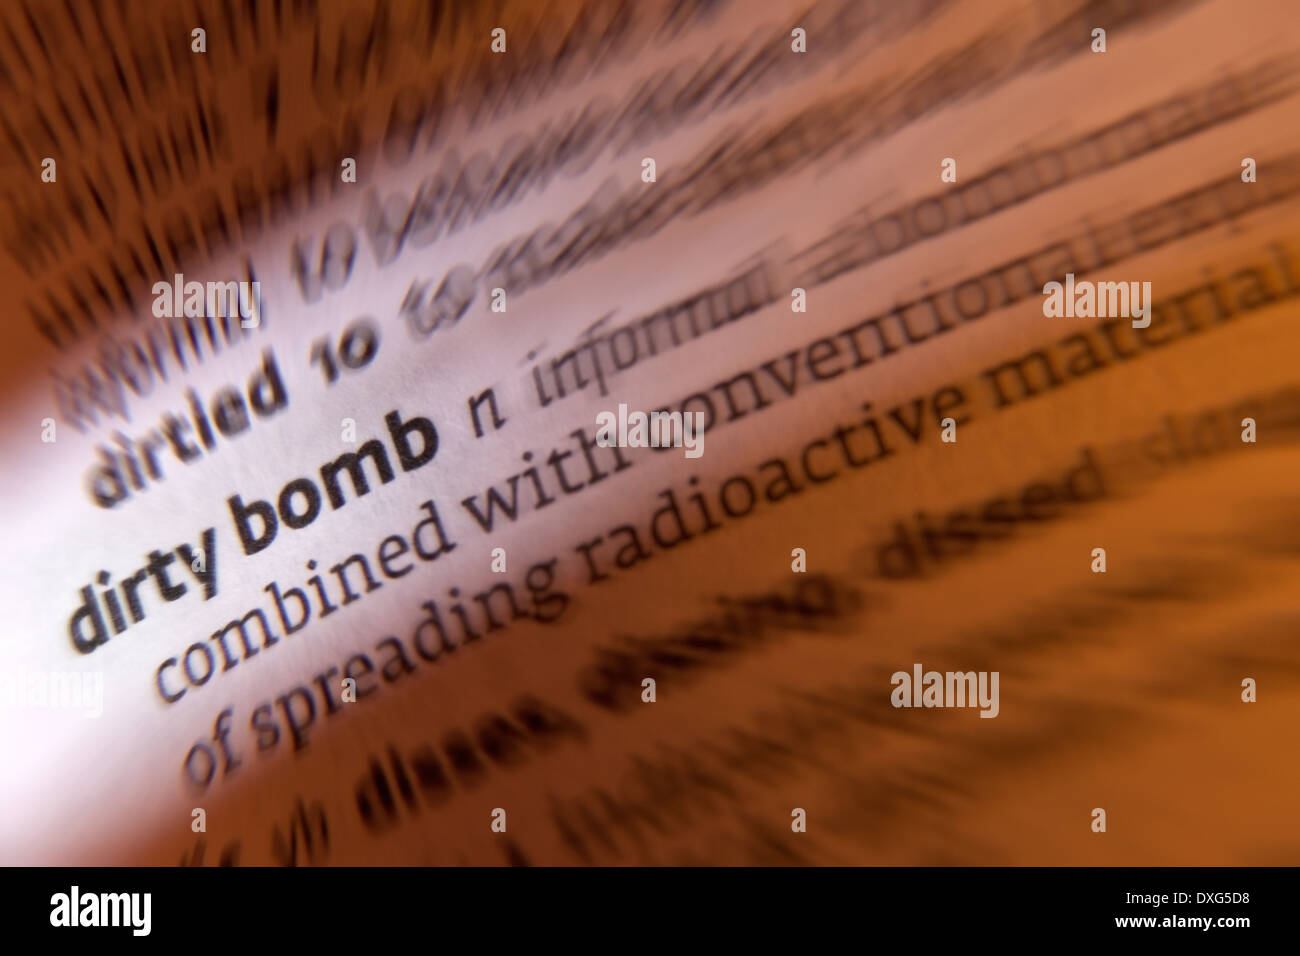 Dirty Bomb - eine improvisierte Atomwaffe von radioaktiven Abfällen Kernmaterial und konventioneller Sprengstoffe. Stockfoto